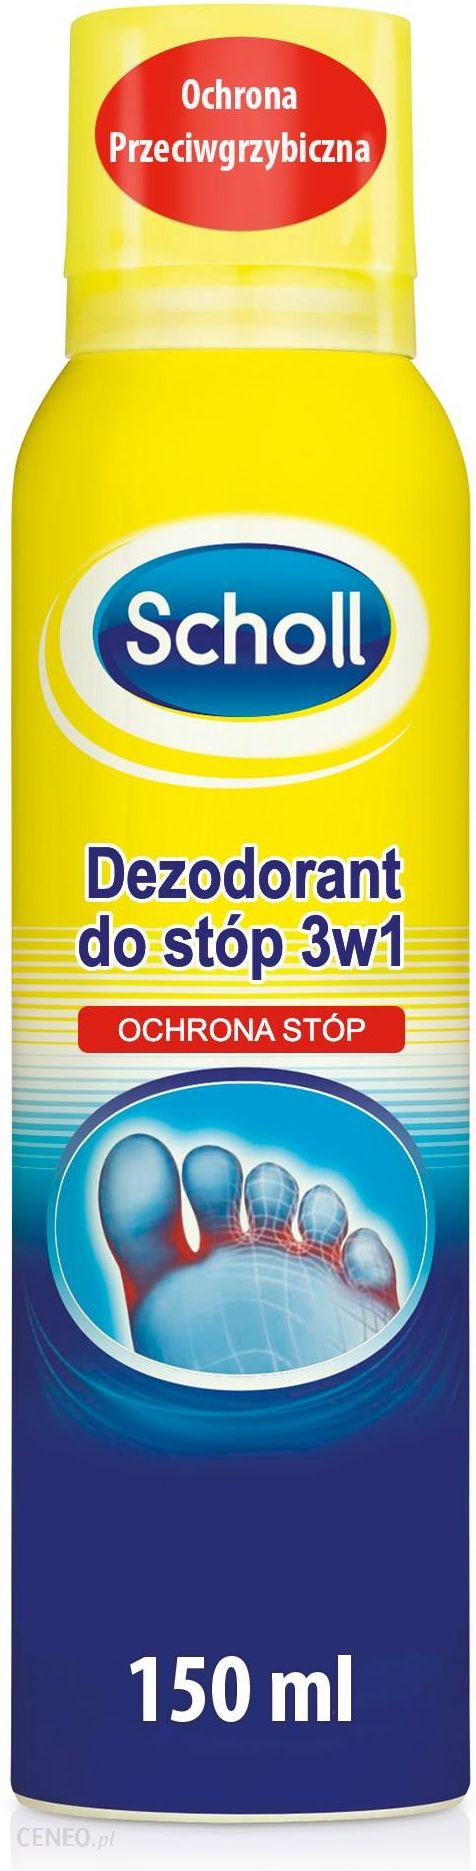 Scholl dezodorant do stóp 3w1 150 ml